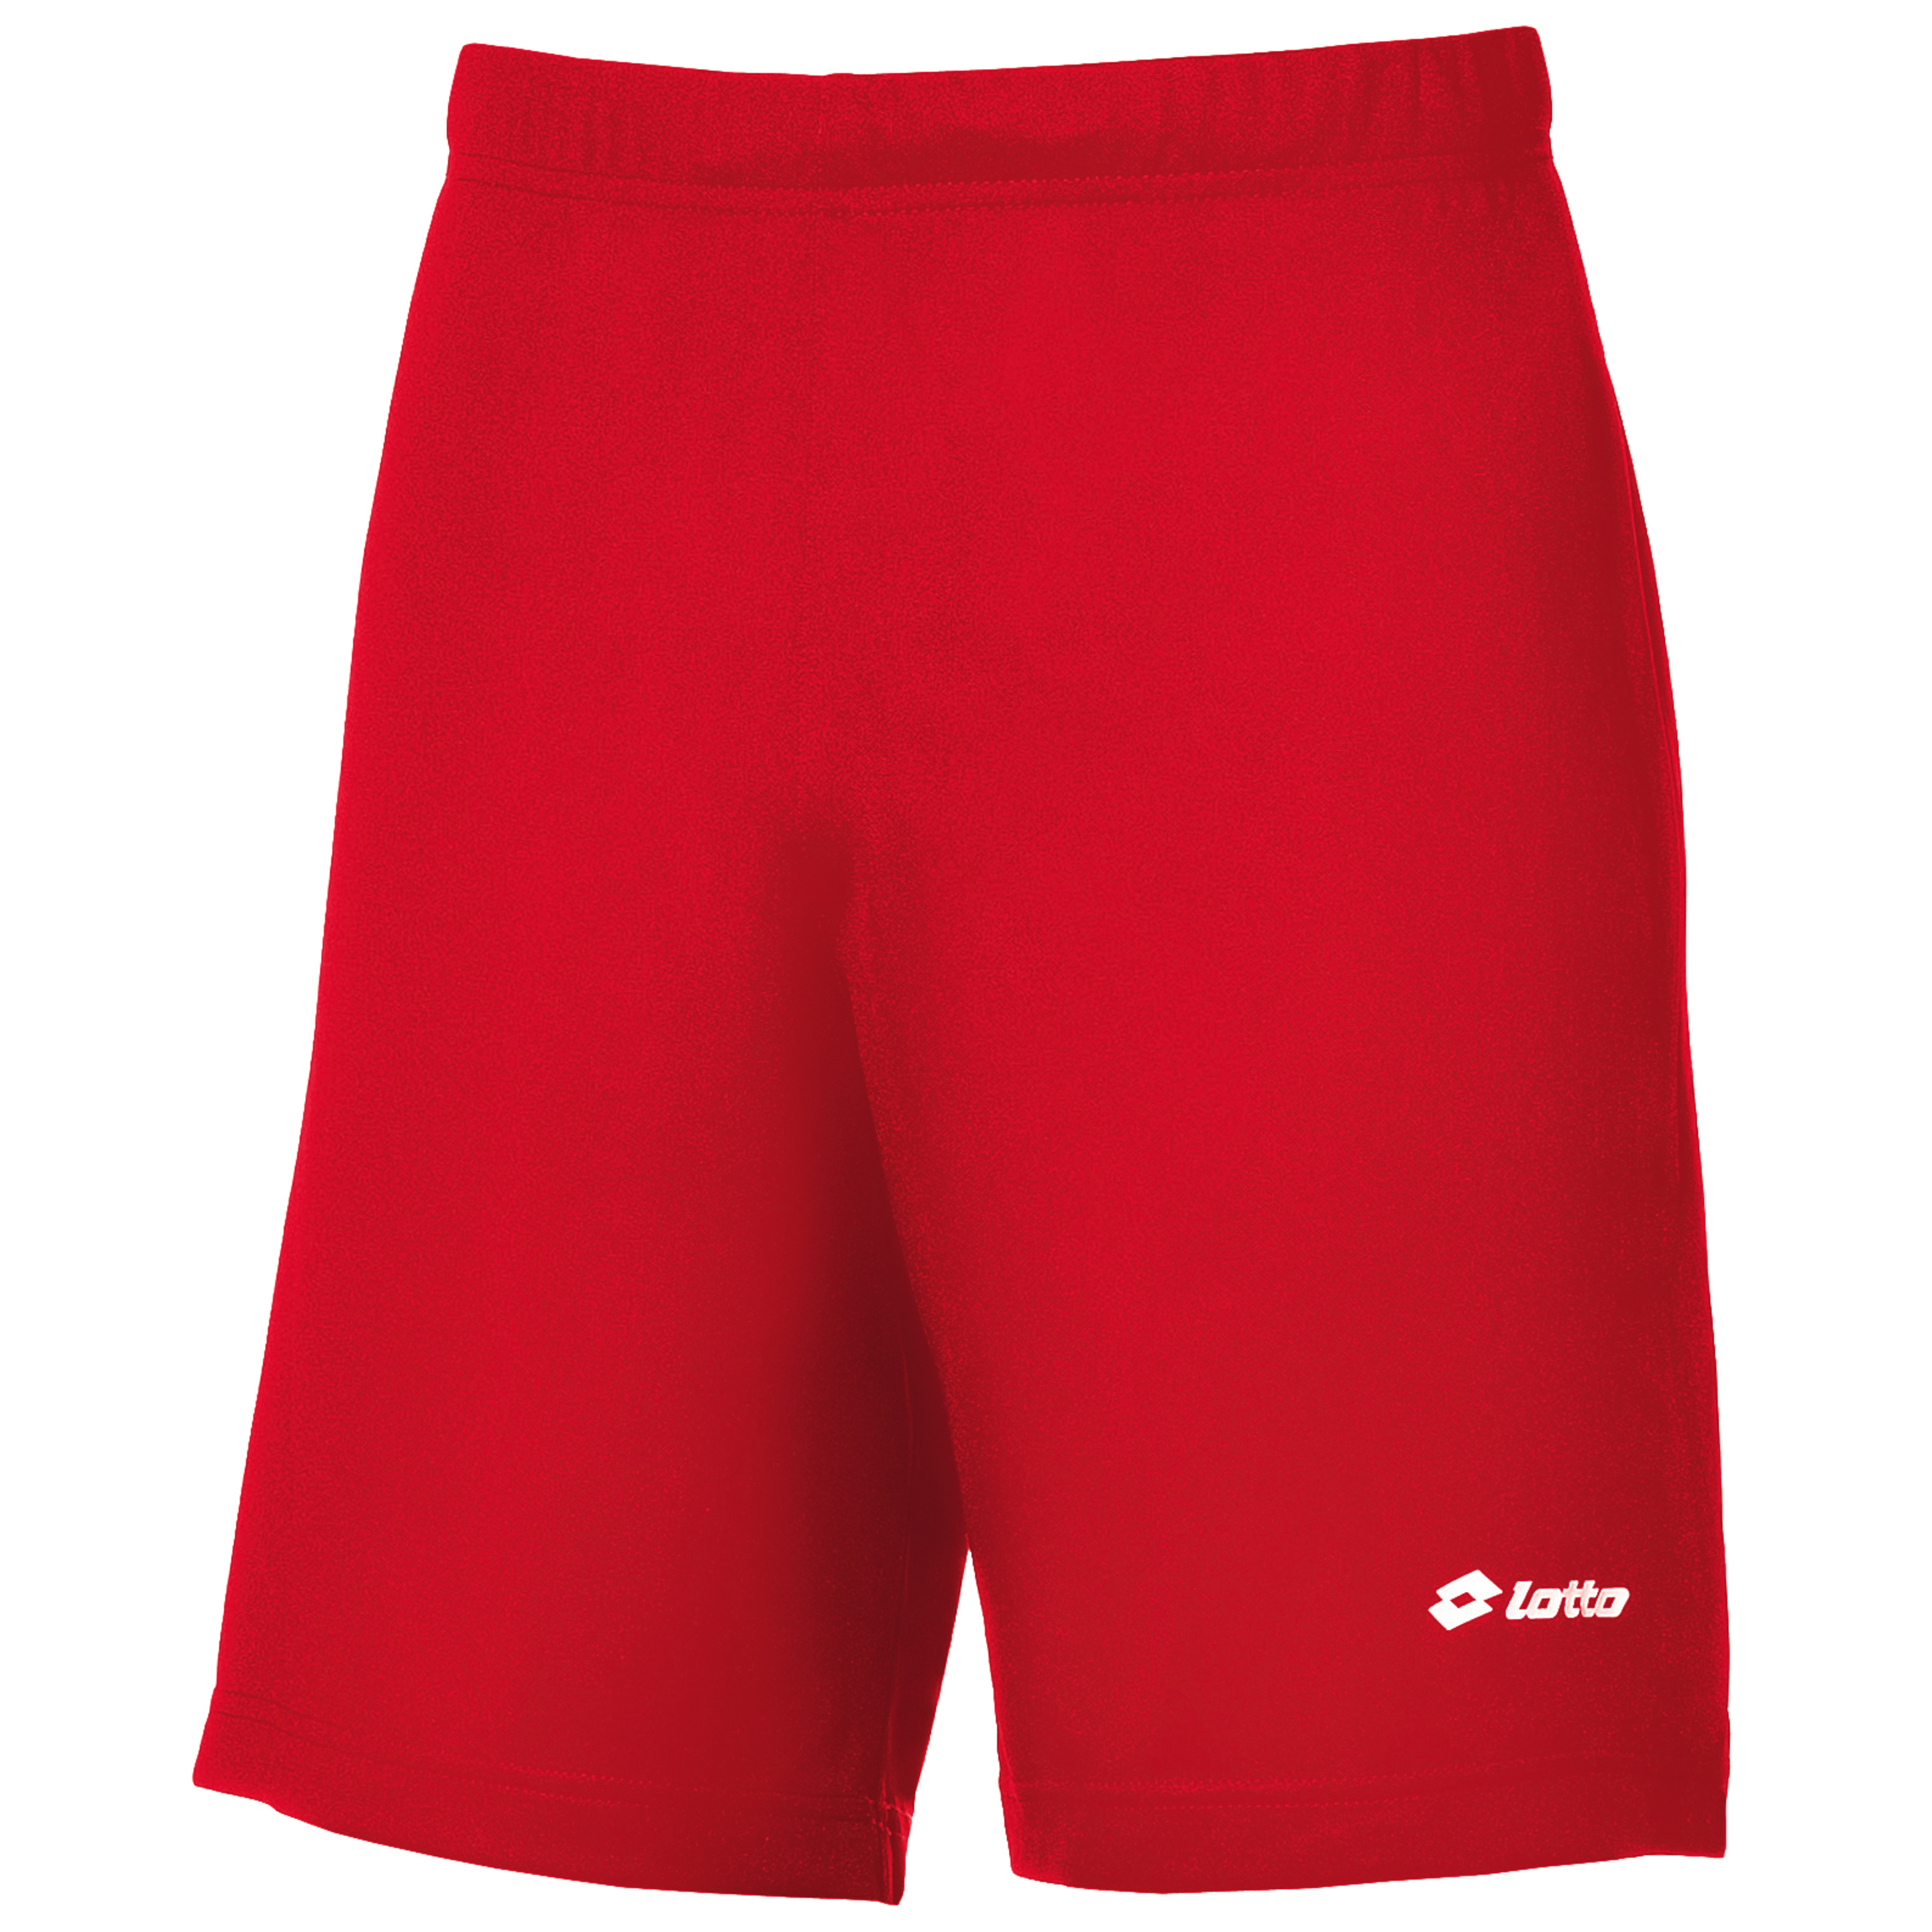 Lotto- Pantalones Cortos De Deporte/fútbol - rojo - 